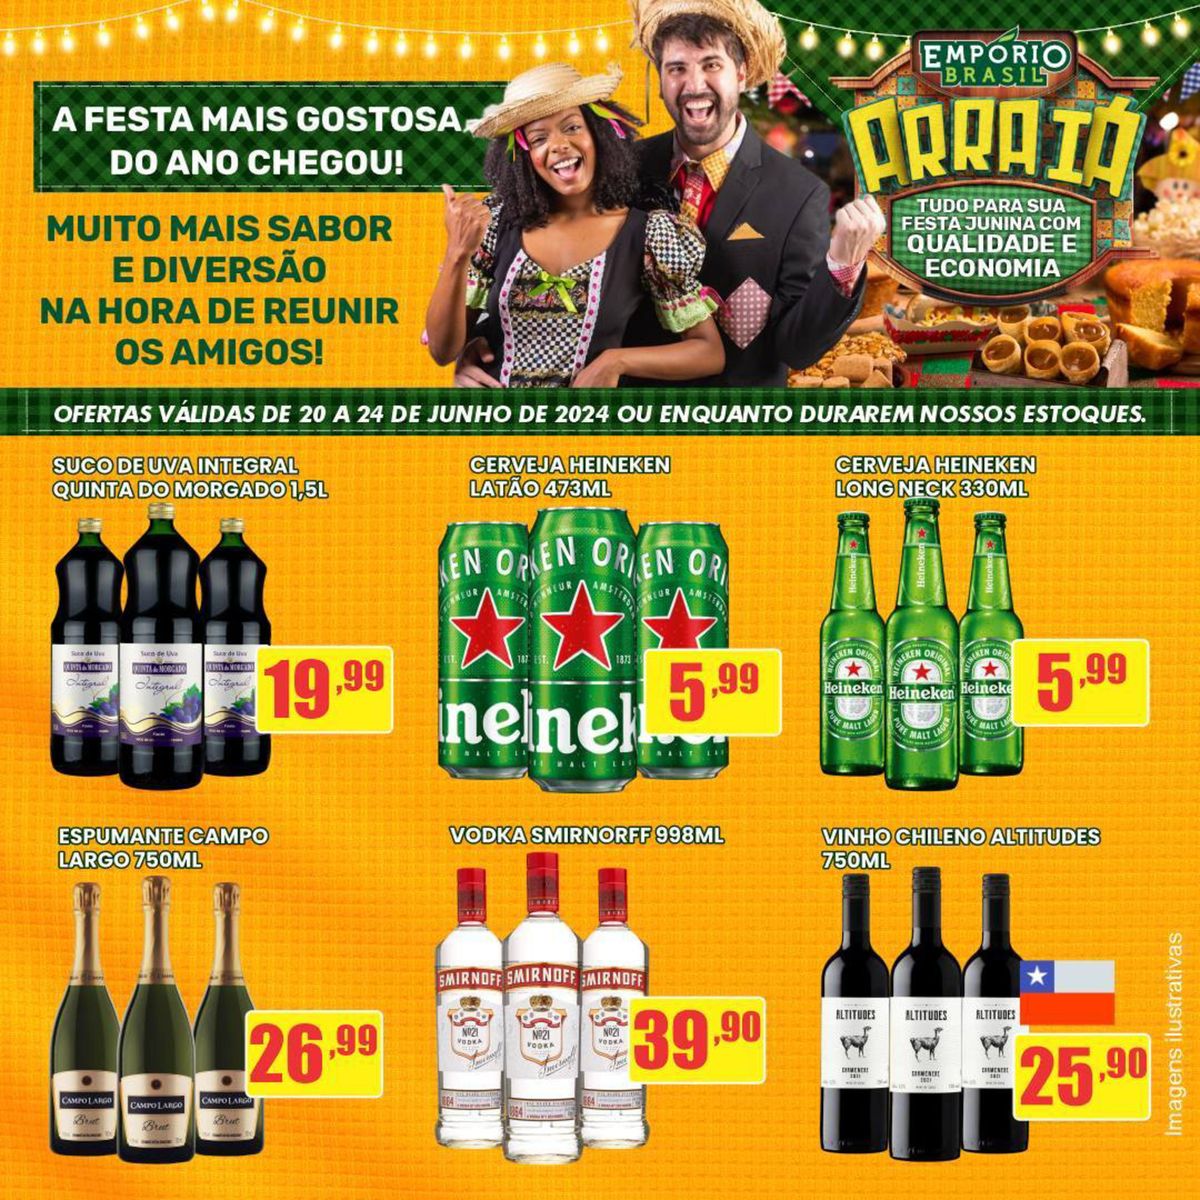 Promoção de Sucos Naturais, Cervejas Heineken e Vinhos Chilenos